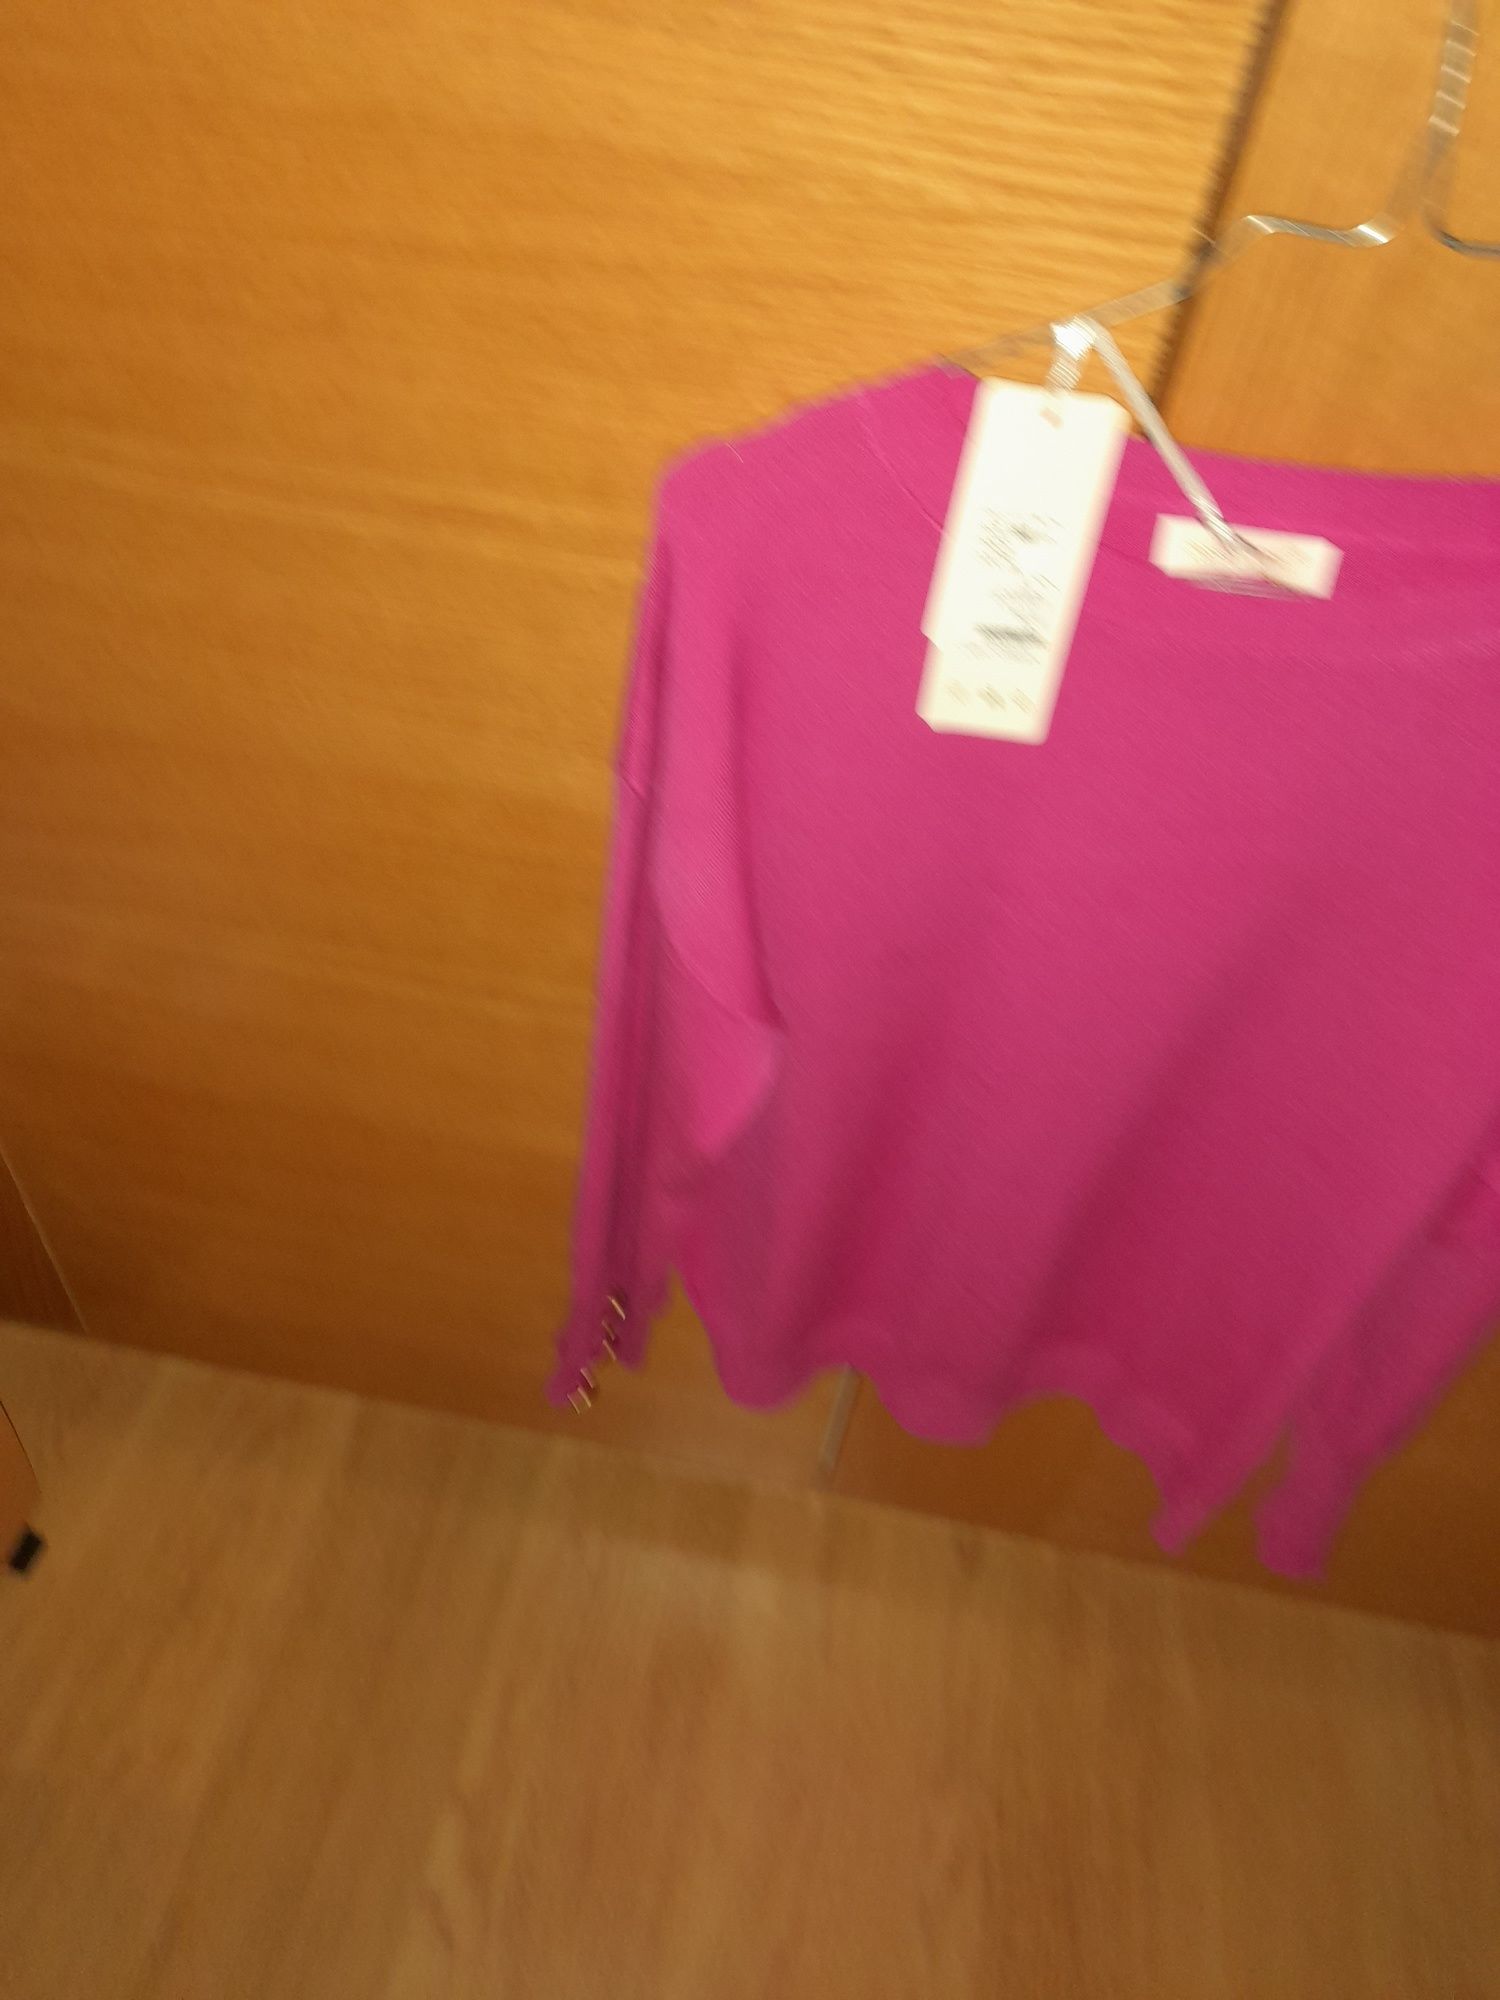 Vendo camisola malha fina na cor rosa igualmente confortável